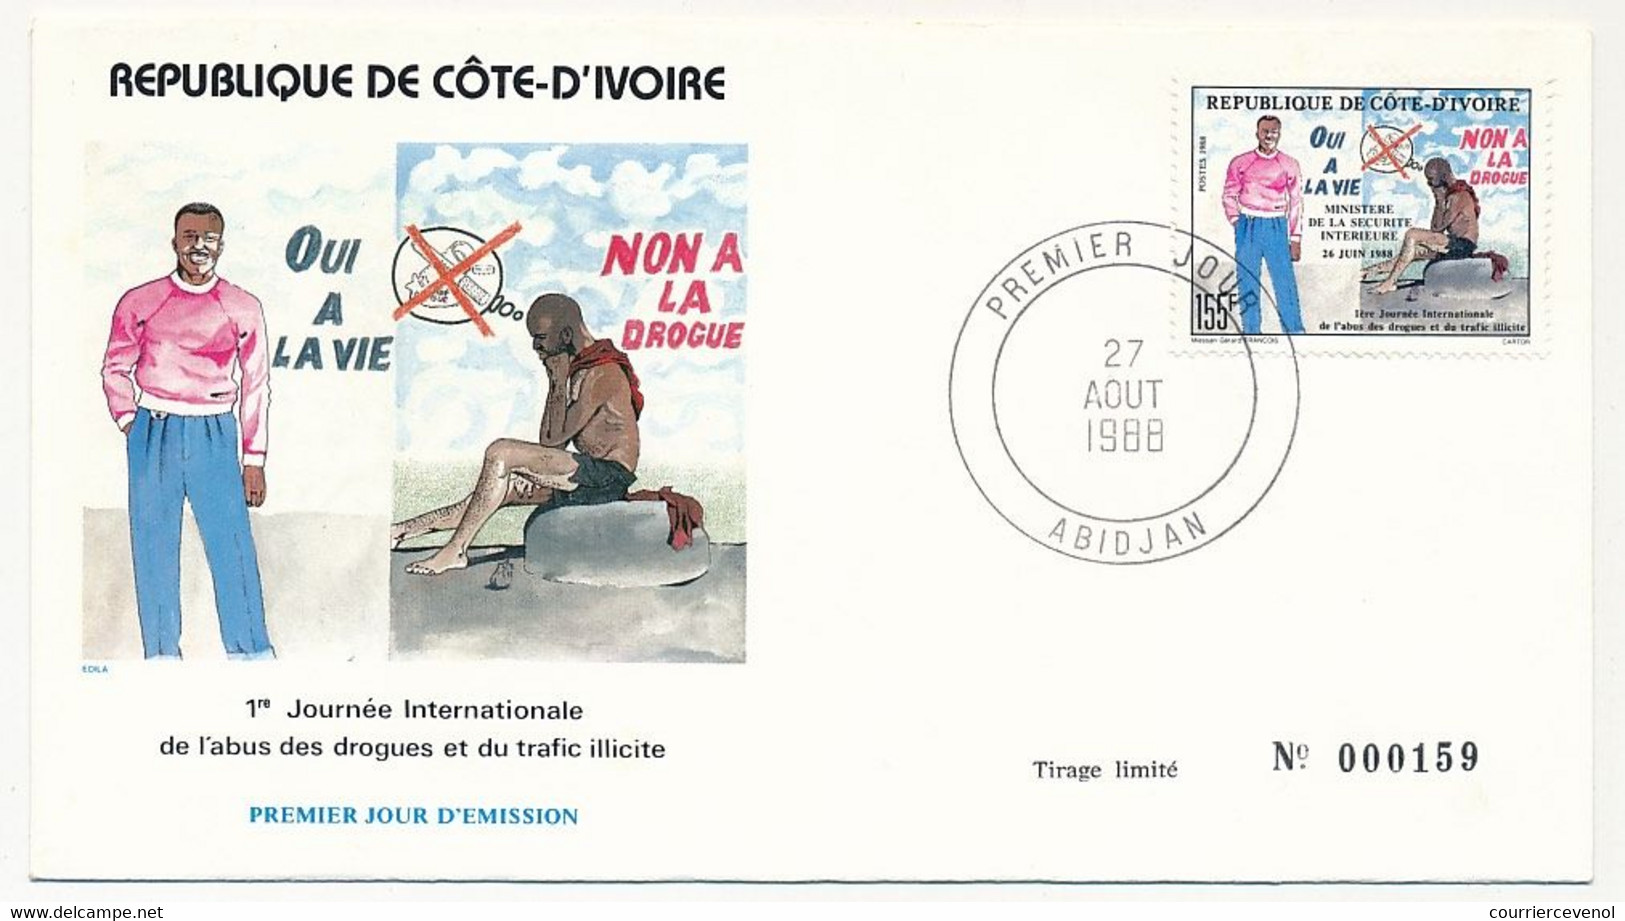 CÔTE D'IVOIRE - Env FDC - 155F Non à La Drogue, Oui à La Vie - 27 Aout 1988 - Abidjan - Ivory Coast (1960-...)